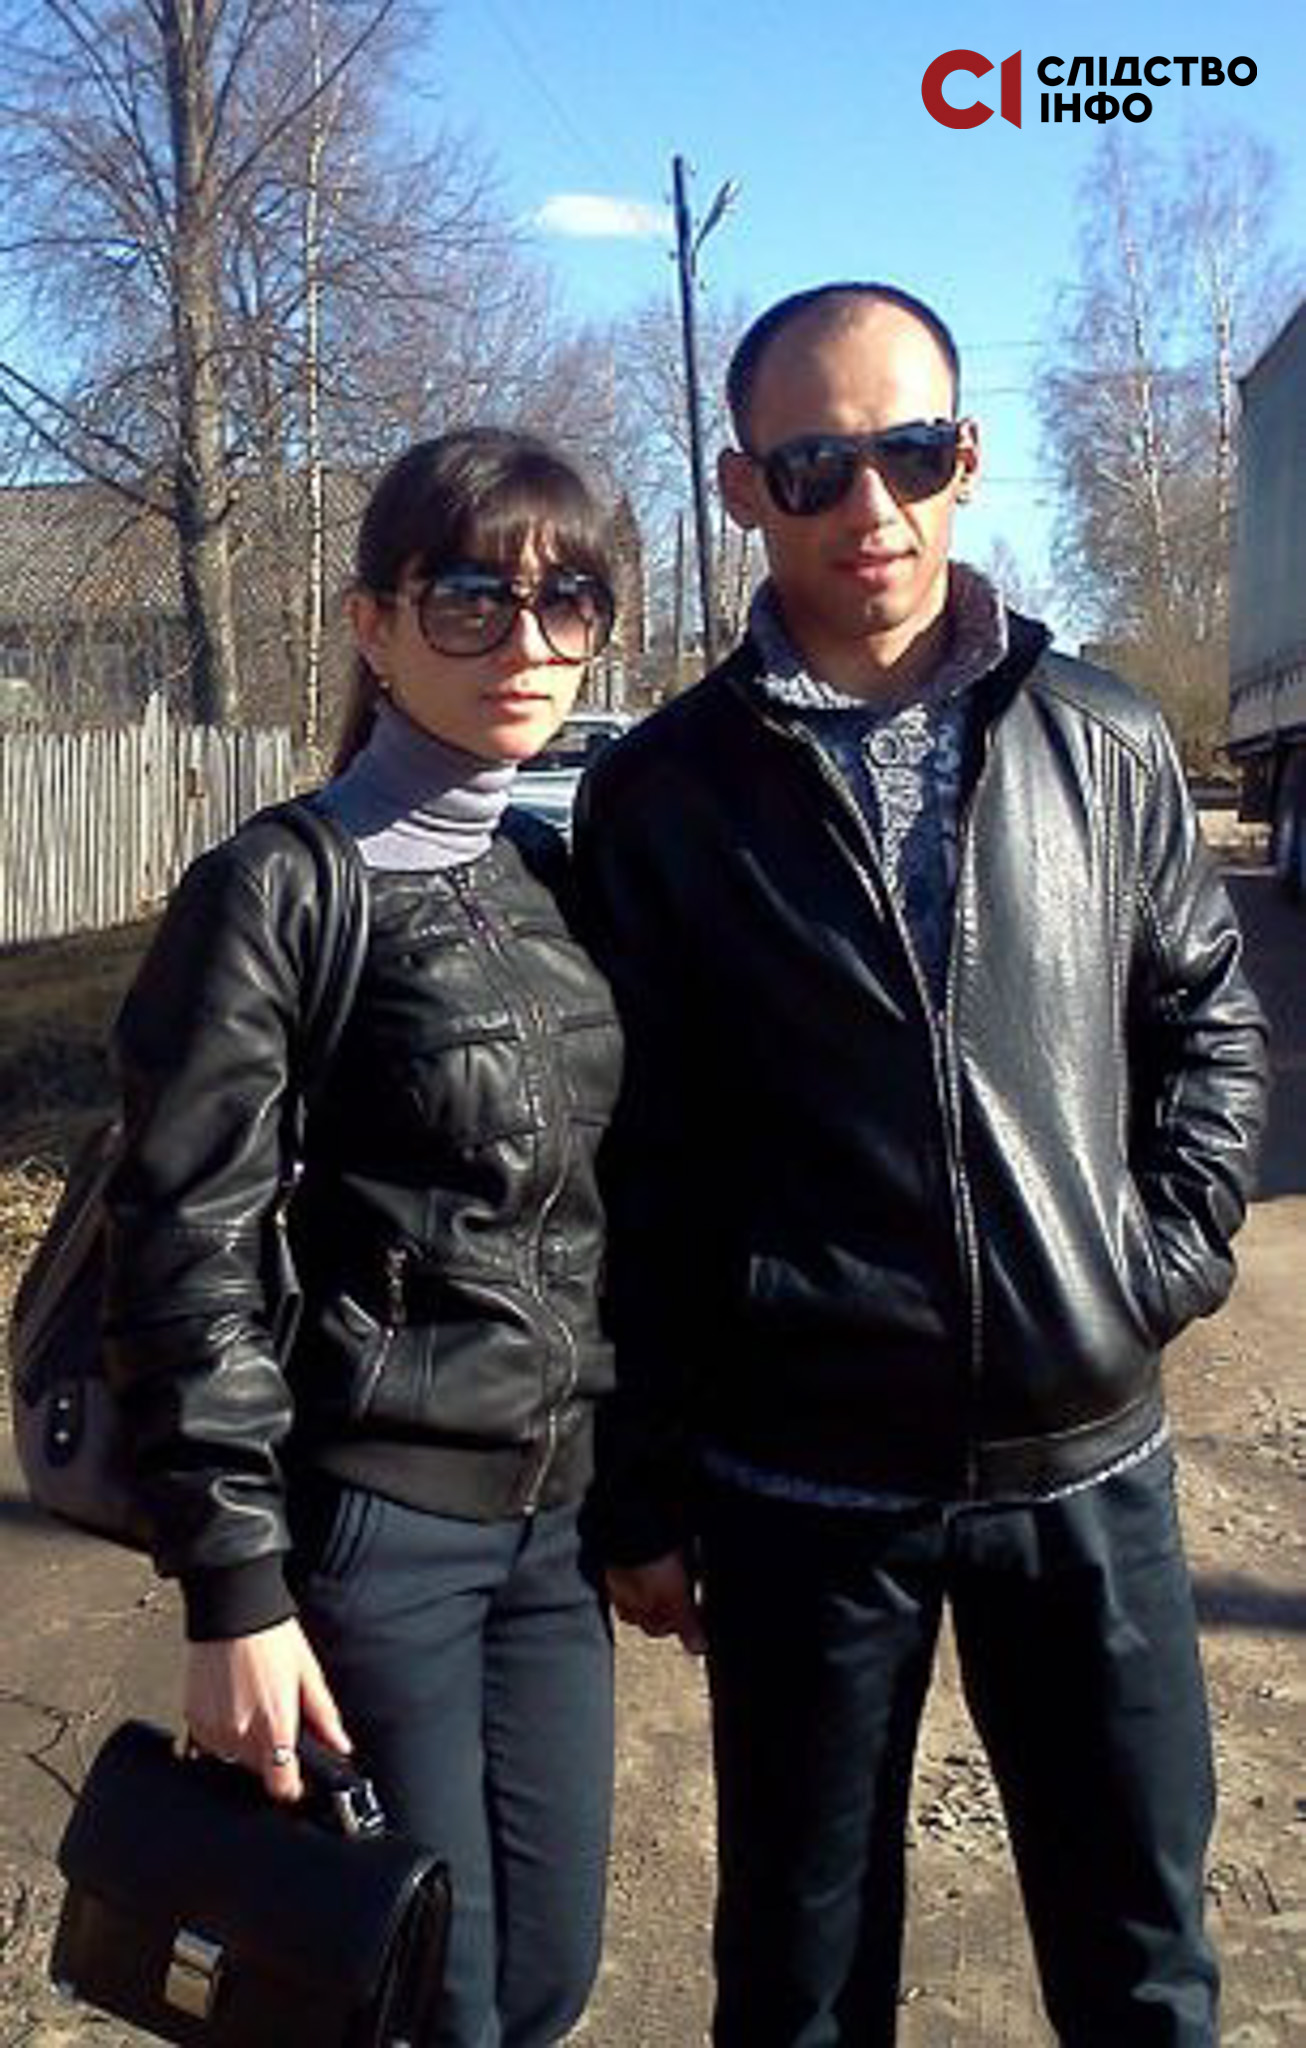 На вулиці стоїть двоє людей у чорному одязі й окулярах: жінка (зліва) і чоловік (справа)